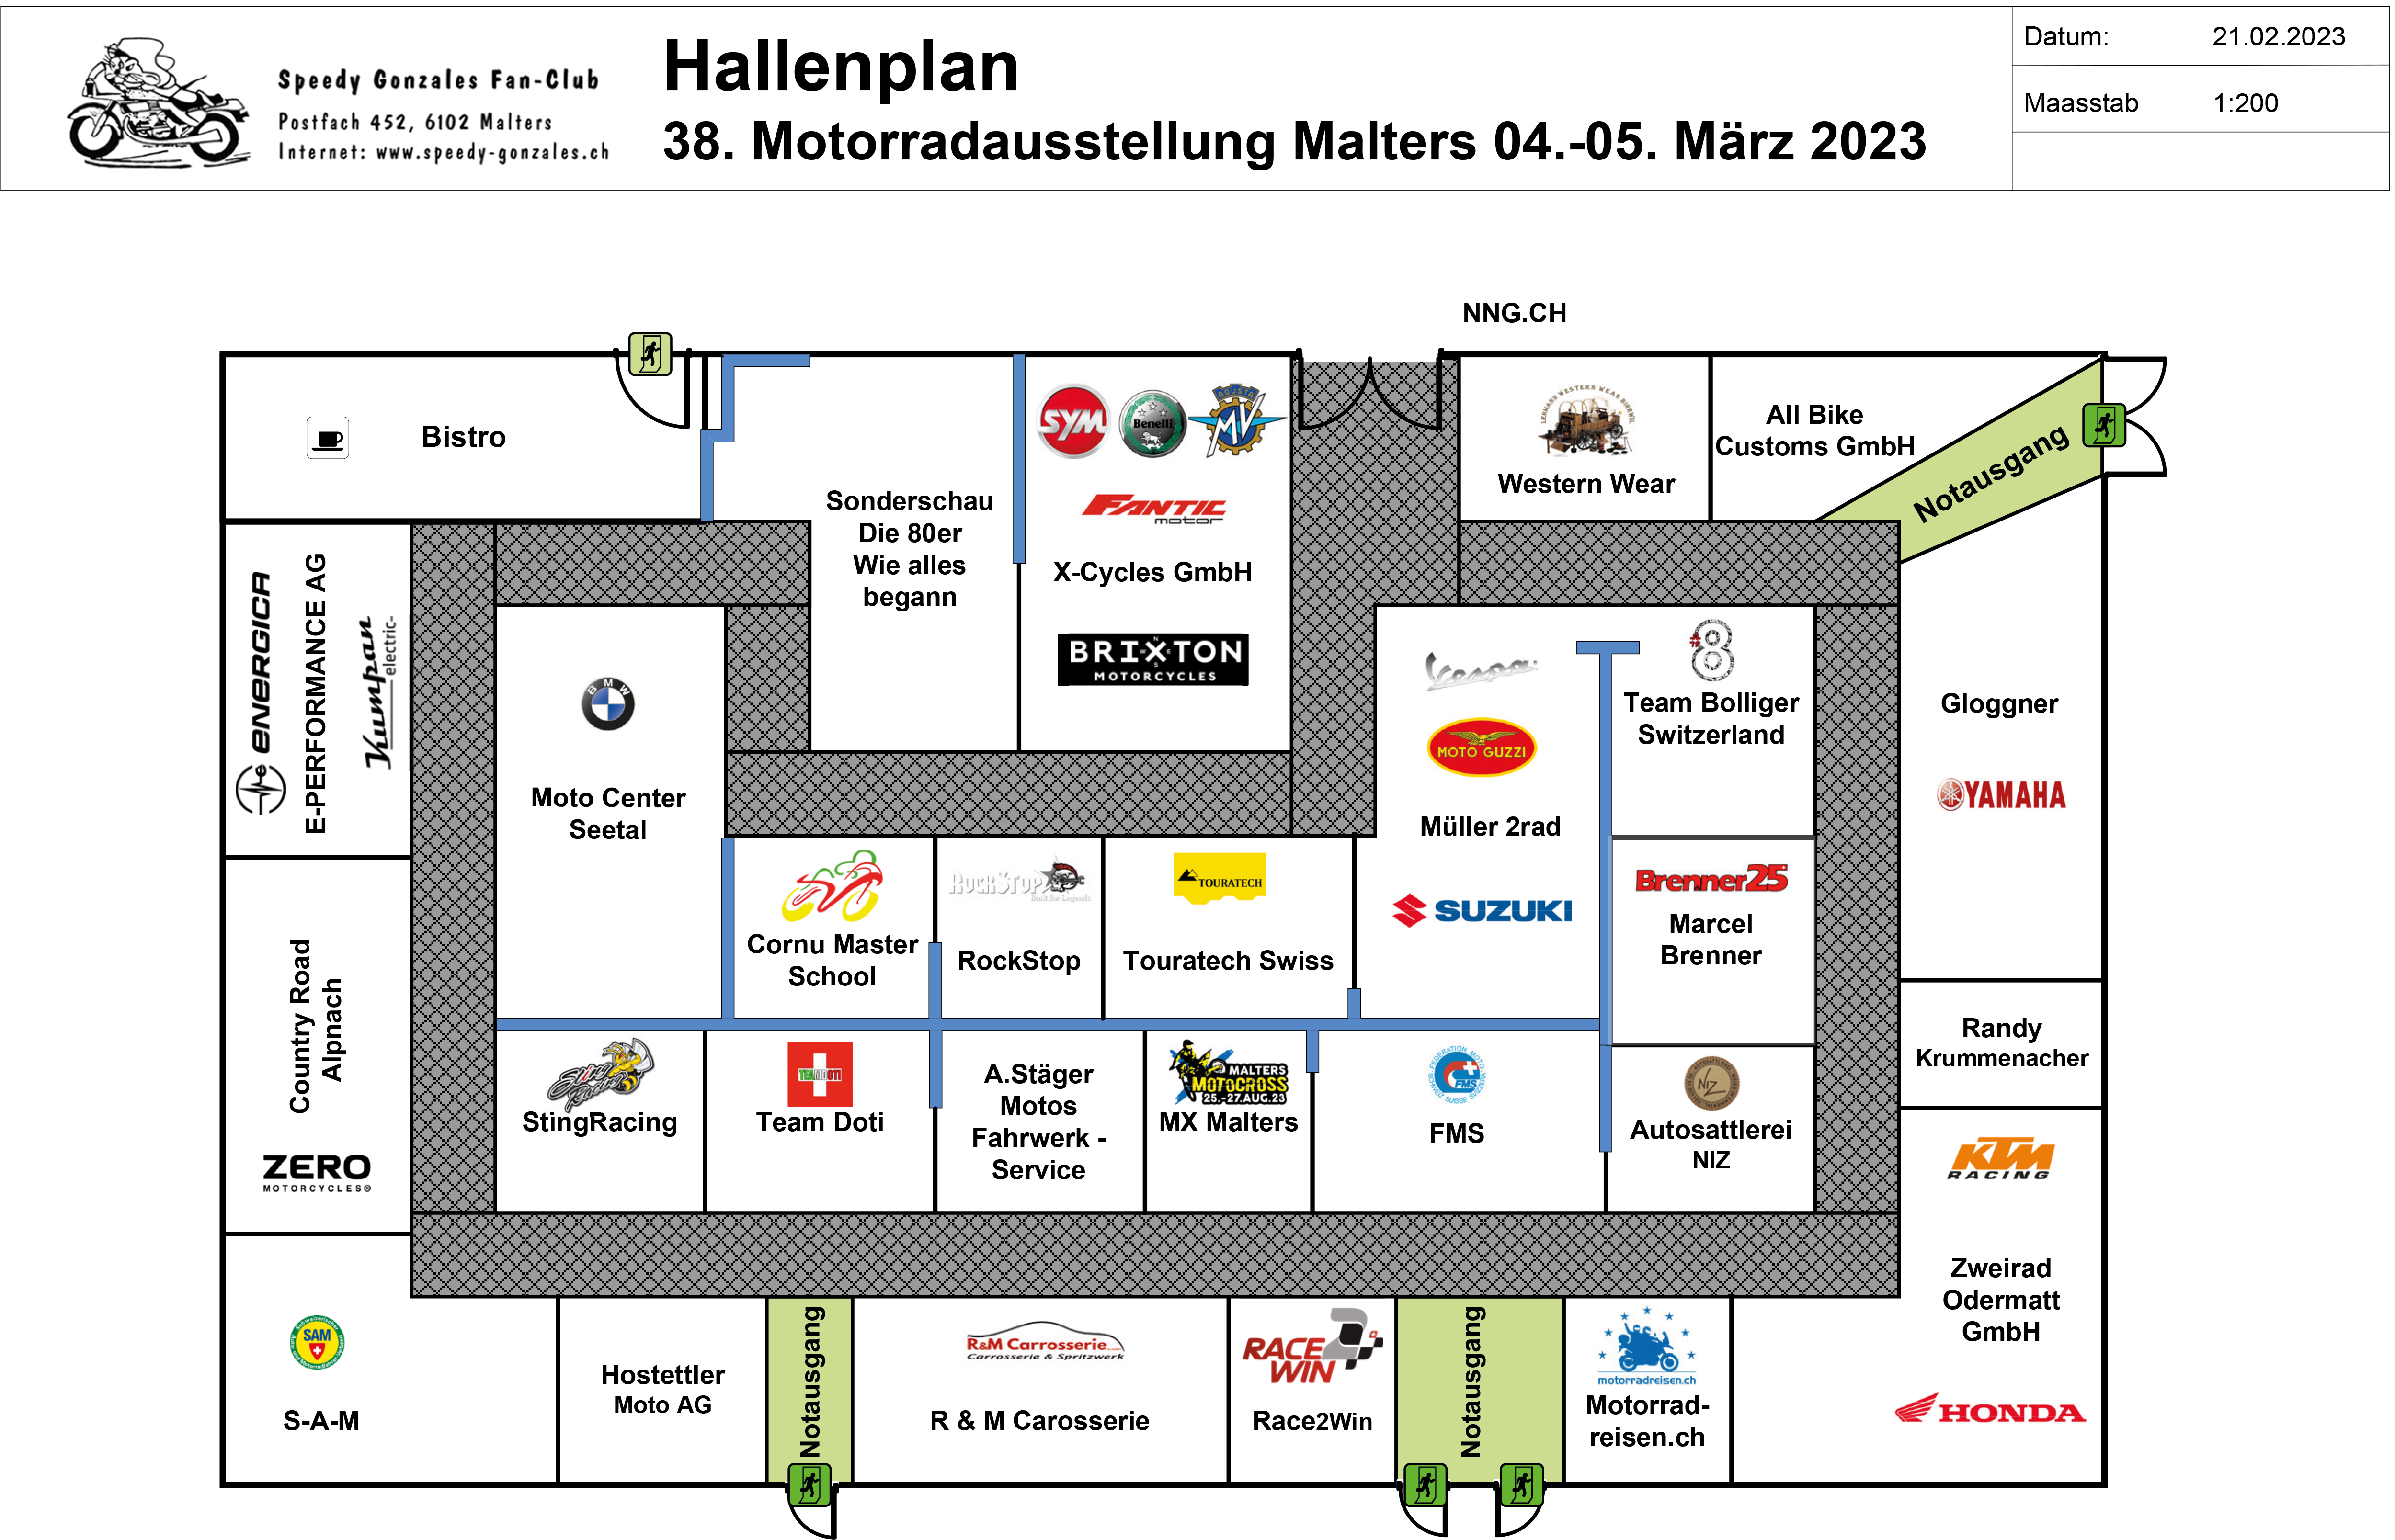 Hallenplan 2023